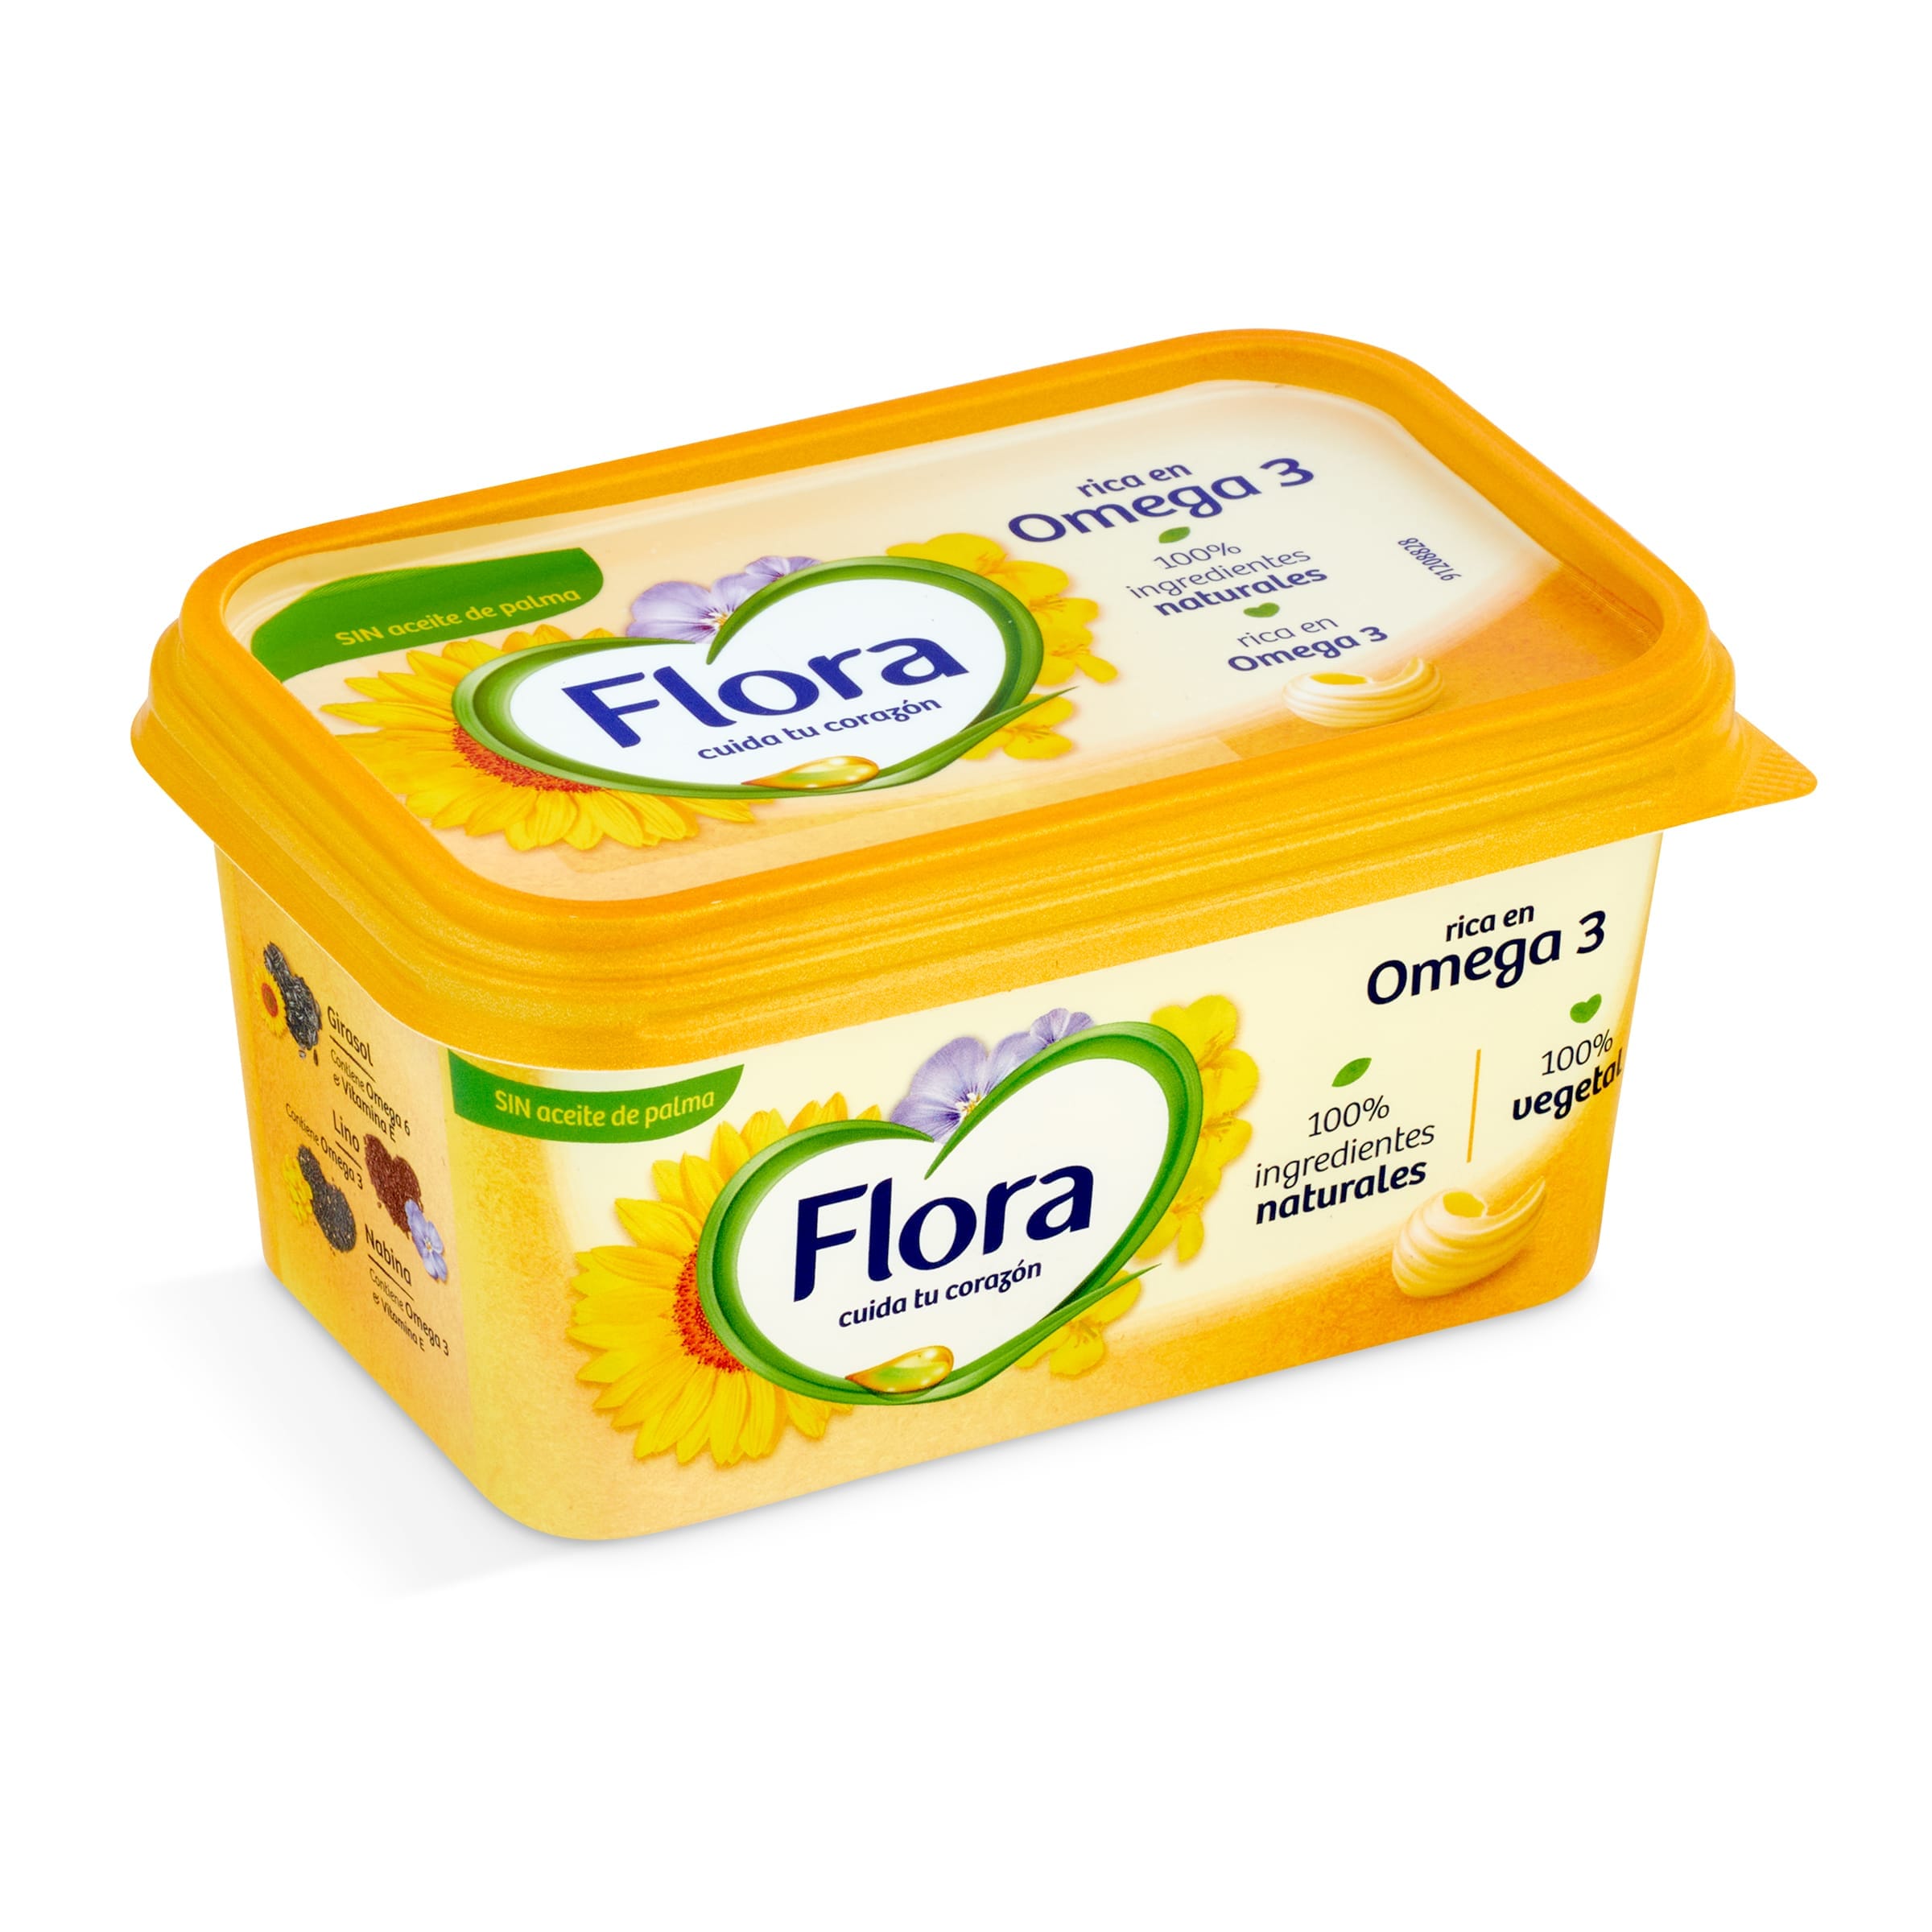 Comprar mantequilla y margarina - Supermercados DIA